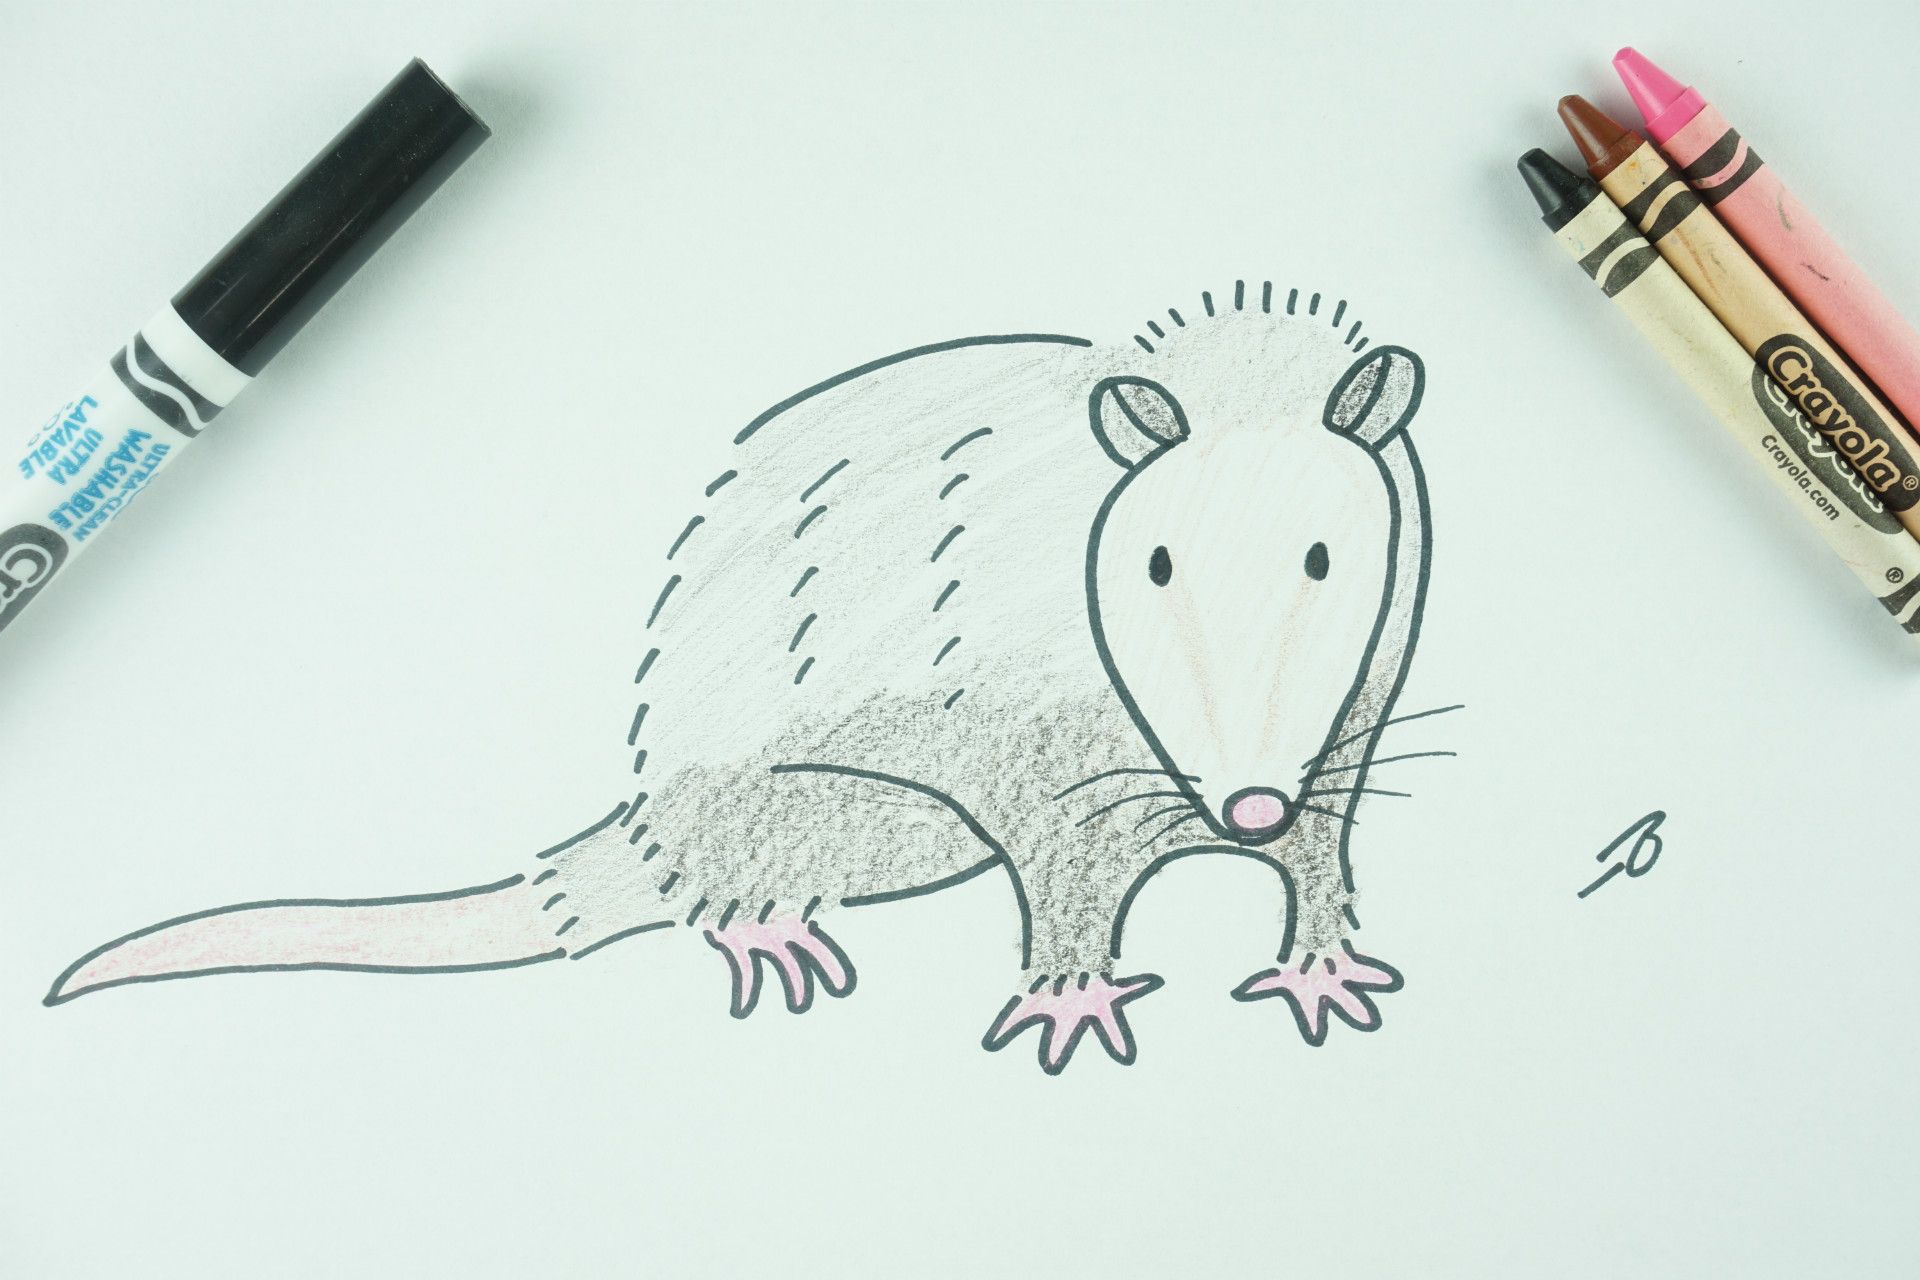 ✒️ How to Draw: A Possum